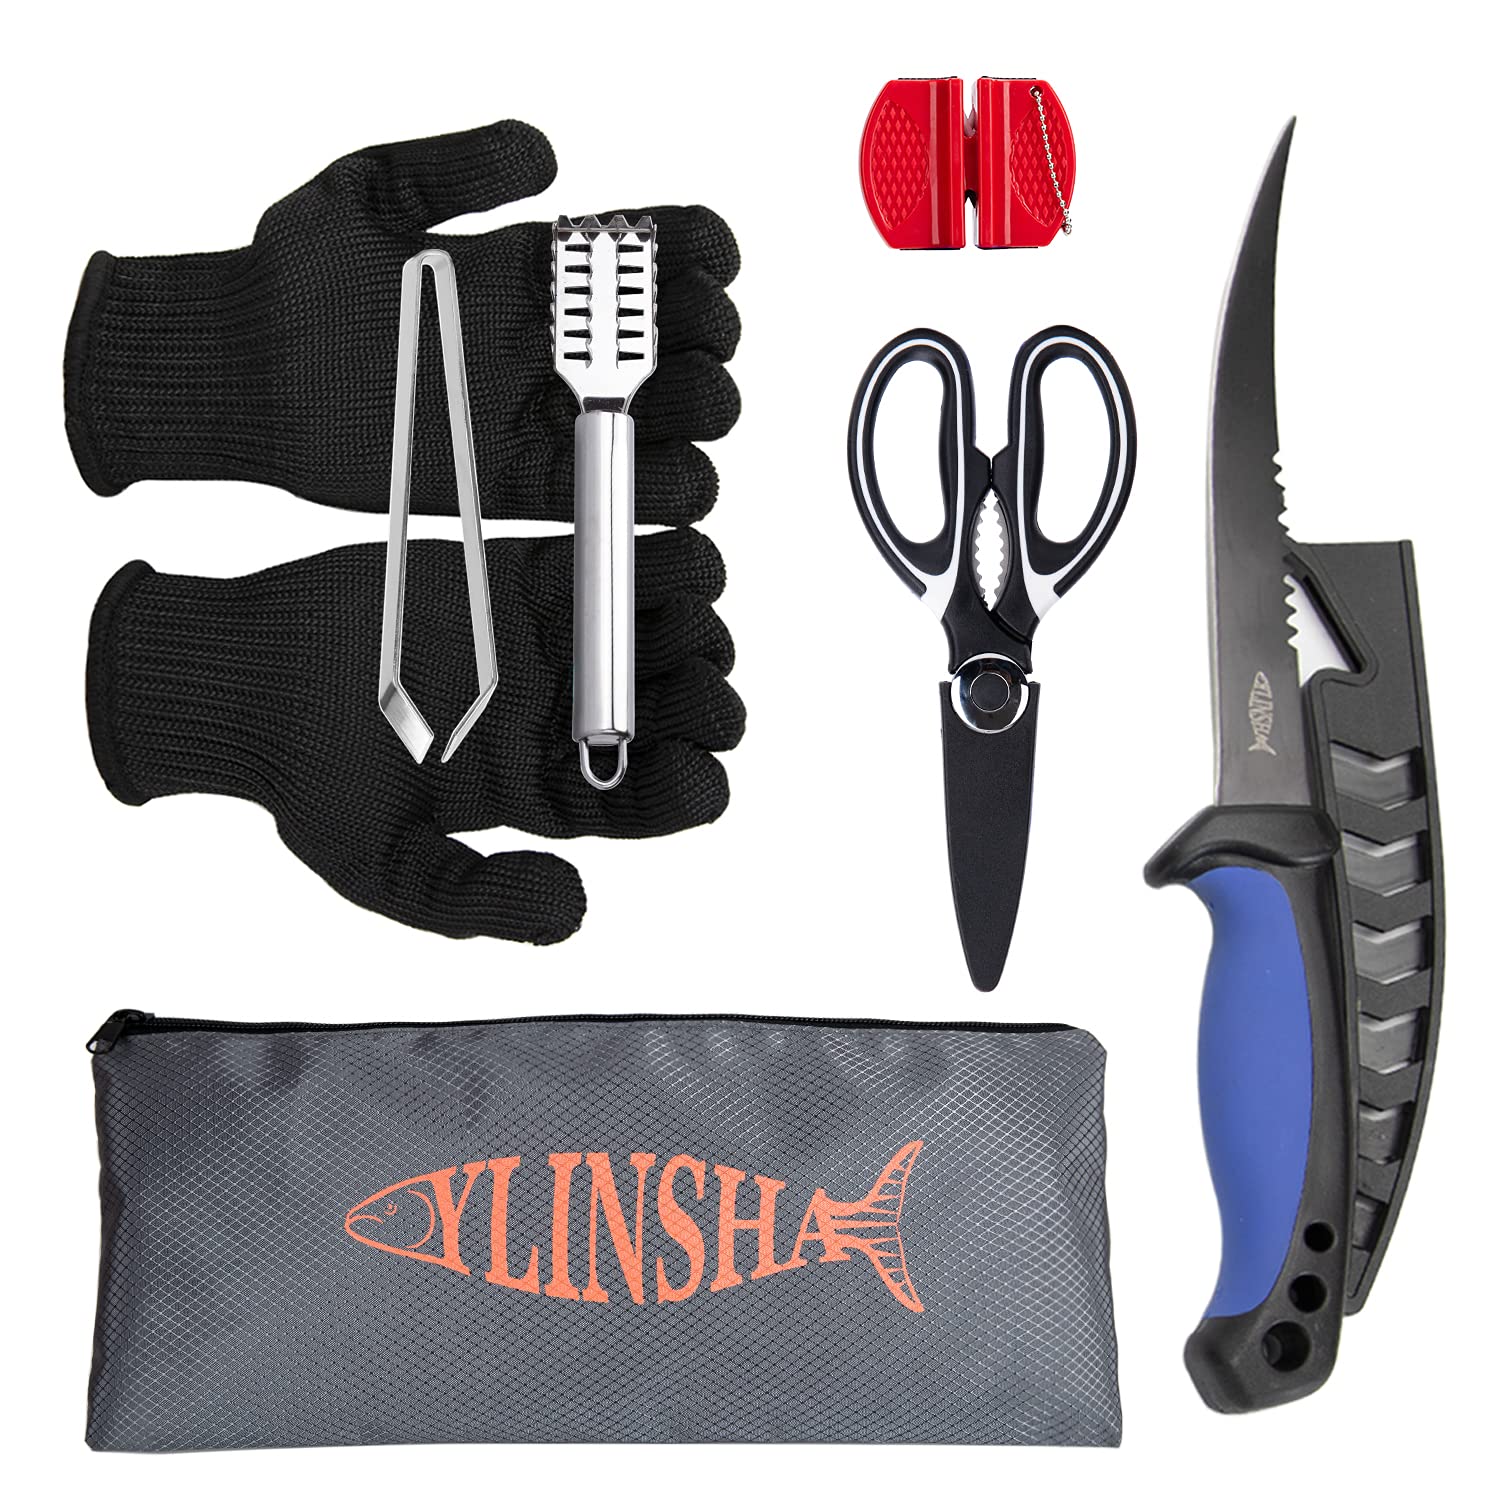 ylinsha Fish Cleaning Kit Fishing Knife 7 PC set coated Bait Knife, Fish  Knife, Fish Scale Cleaning Brush, multi-functional Scissors, anti-cutting  Gloves, Fishbone Tweezers, storage Bag